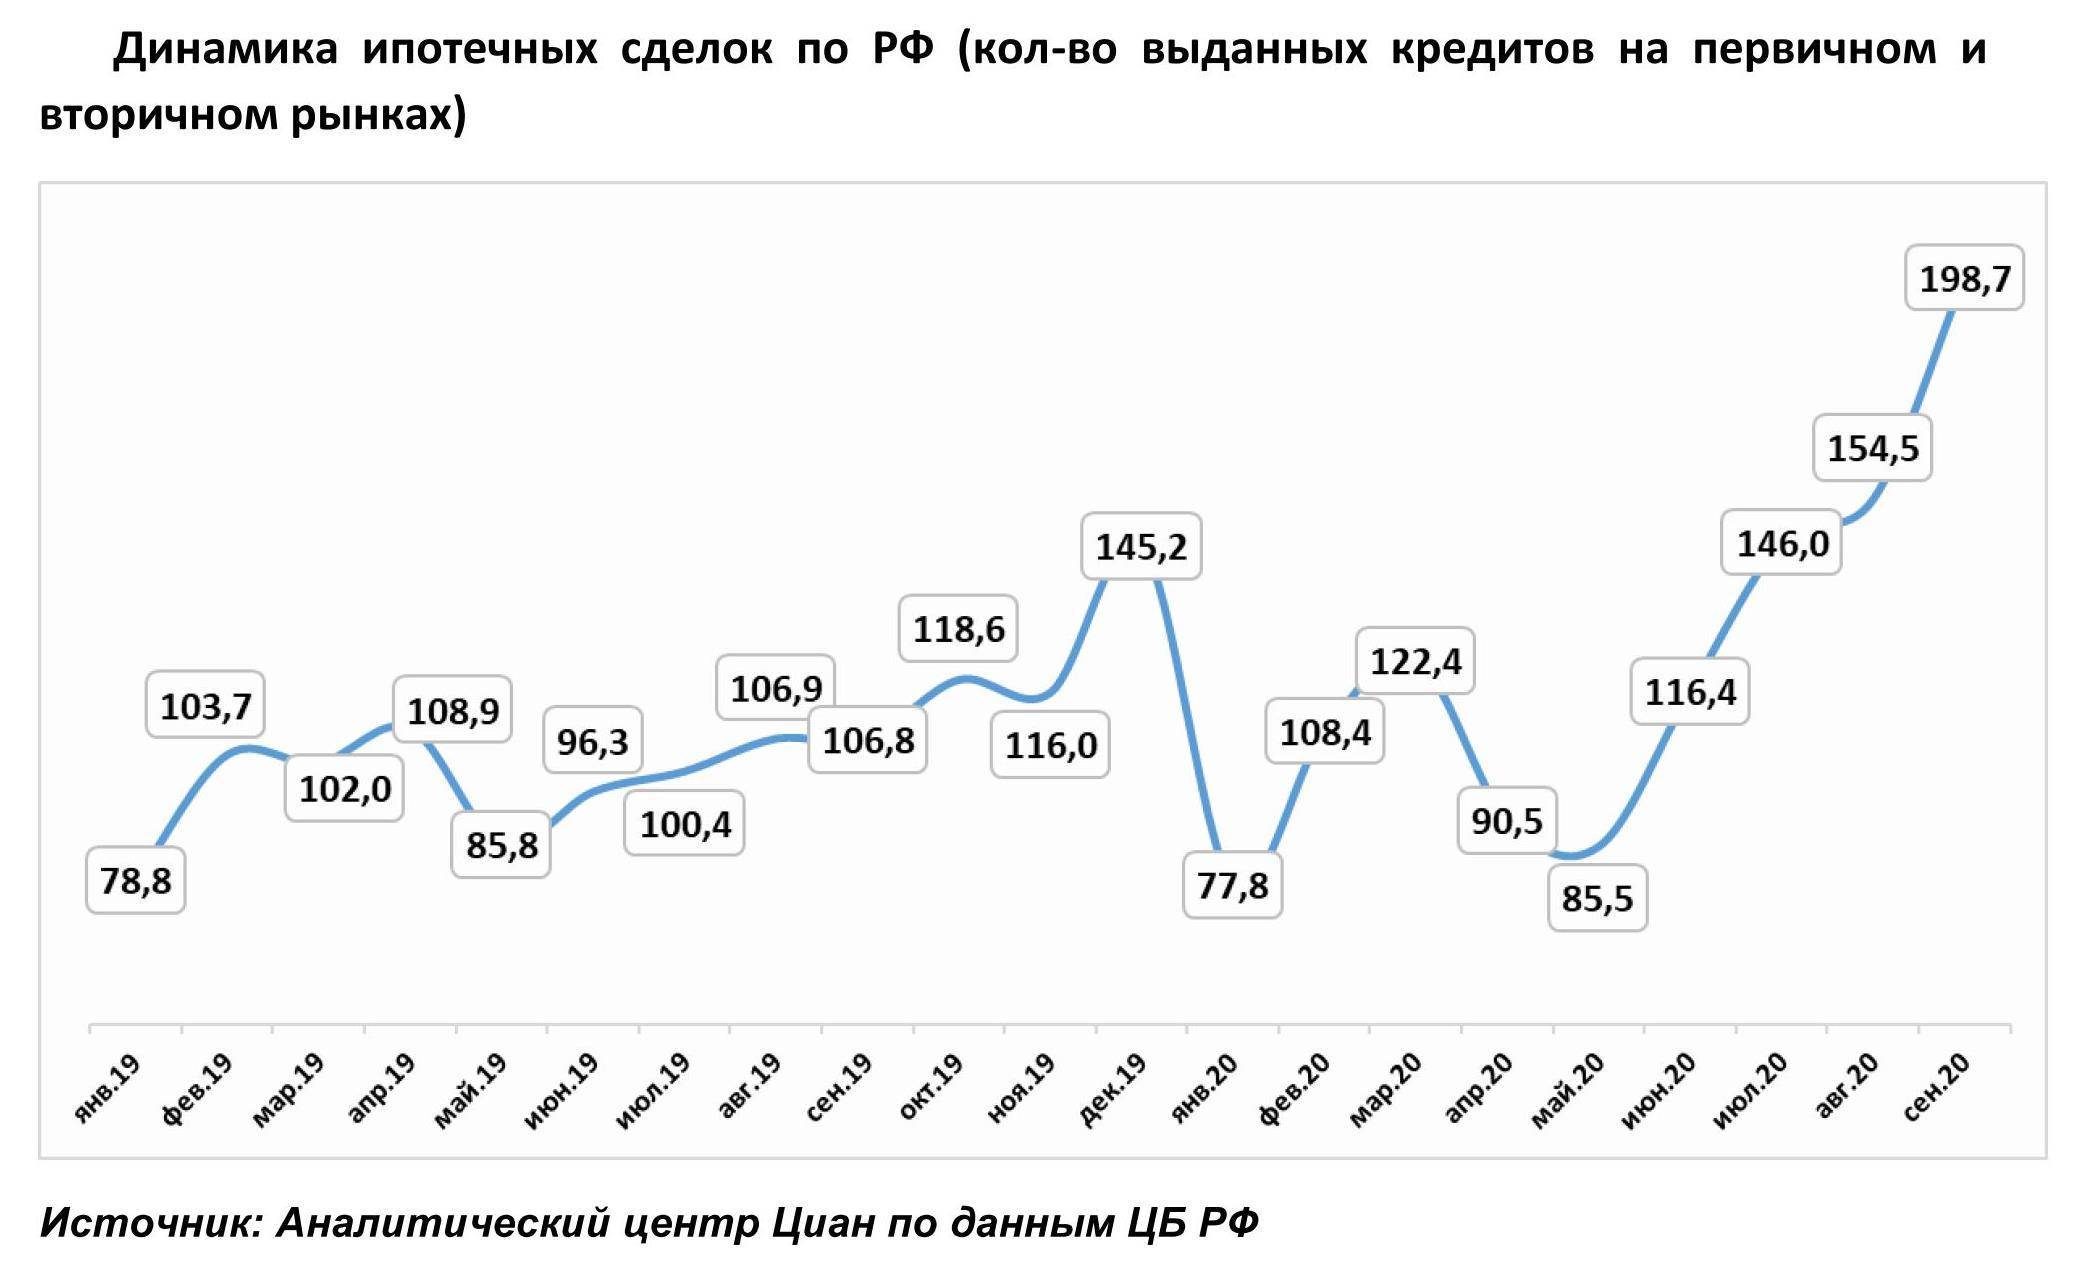 Как менялась ставка по ипотеке в россии: правдивые цифры с 90-х по наши дни